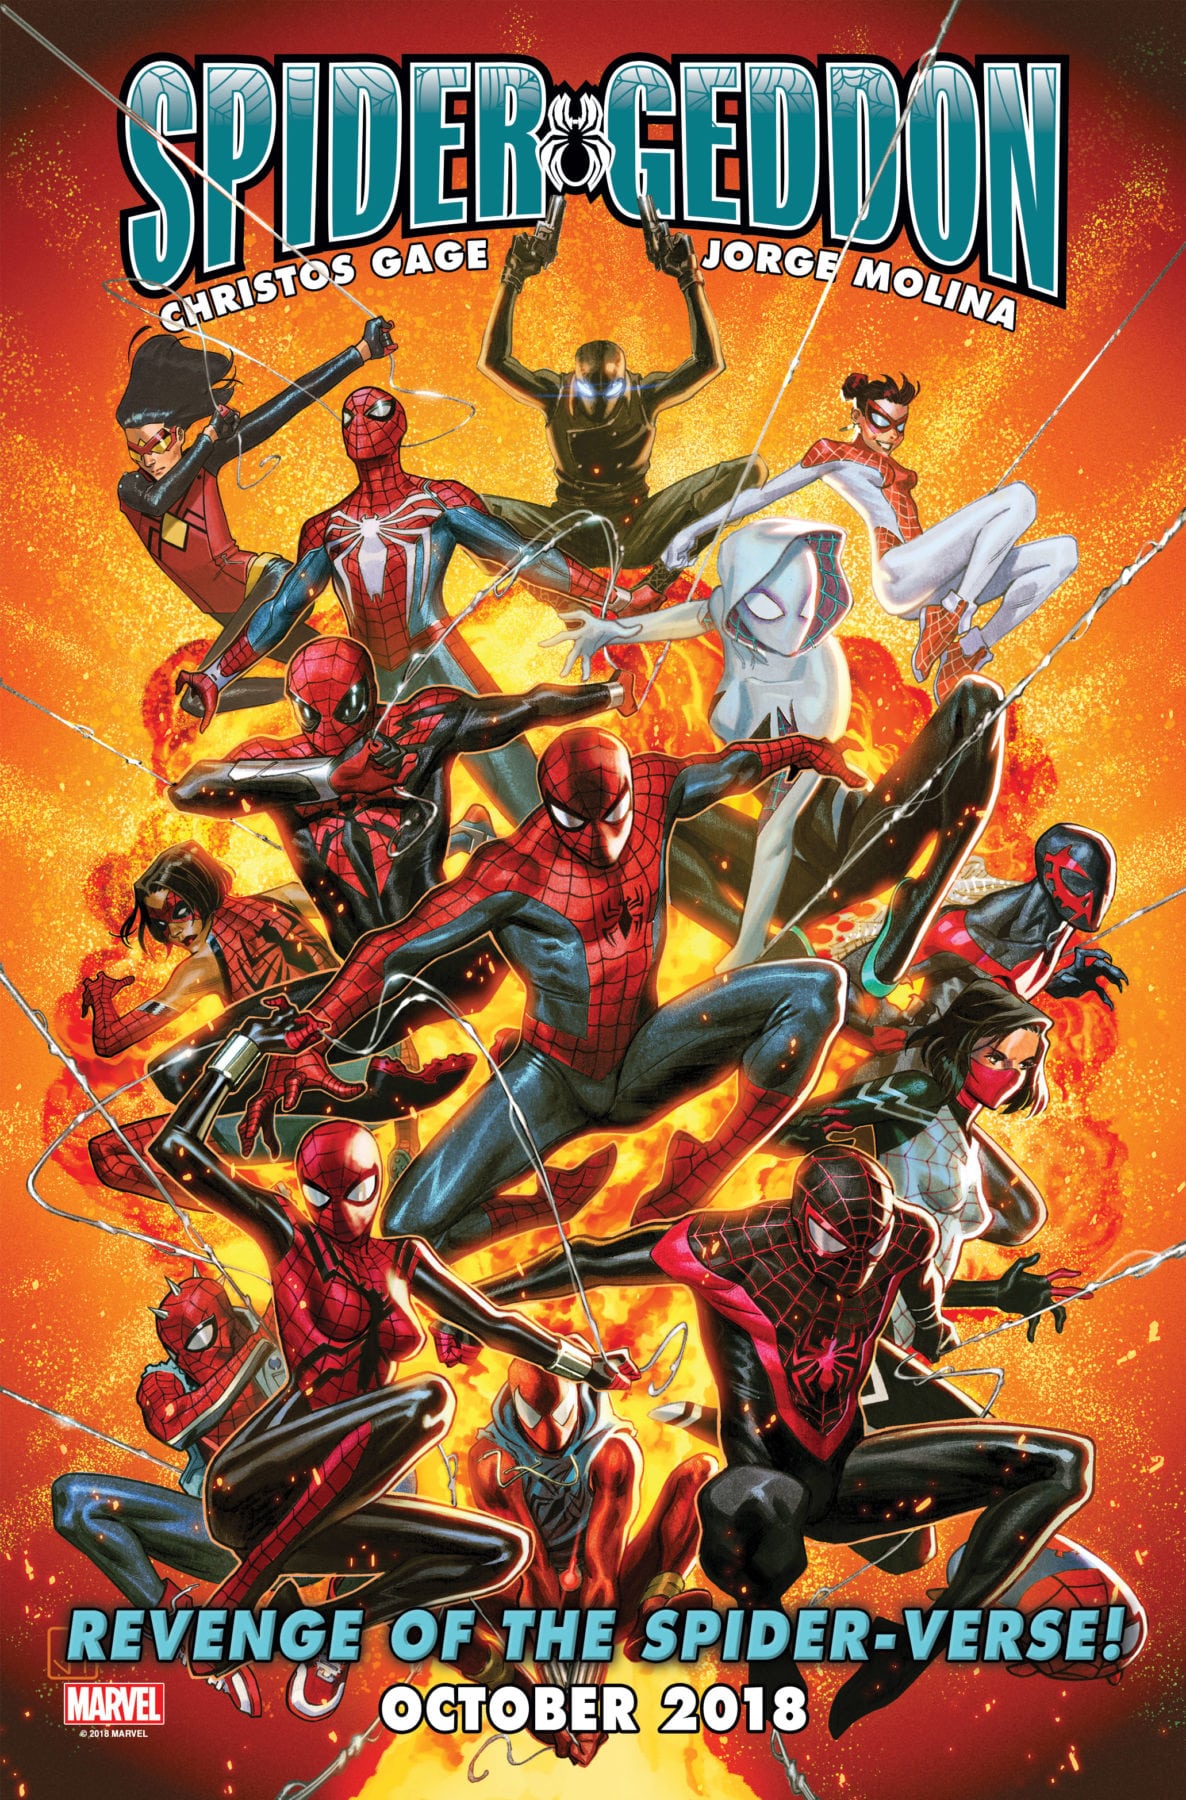 Prepárate para la venganza del Spider-Verse mientras Marvel anuncia Spider-Geddon